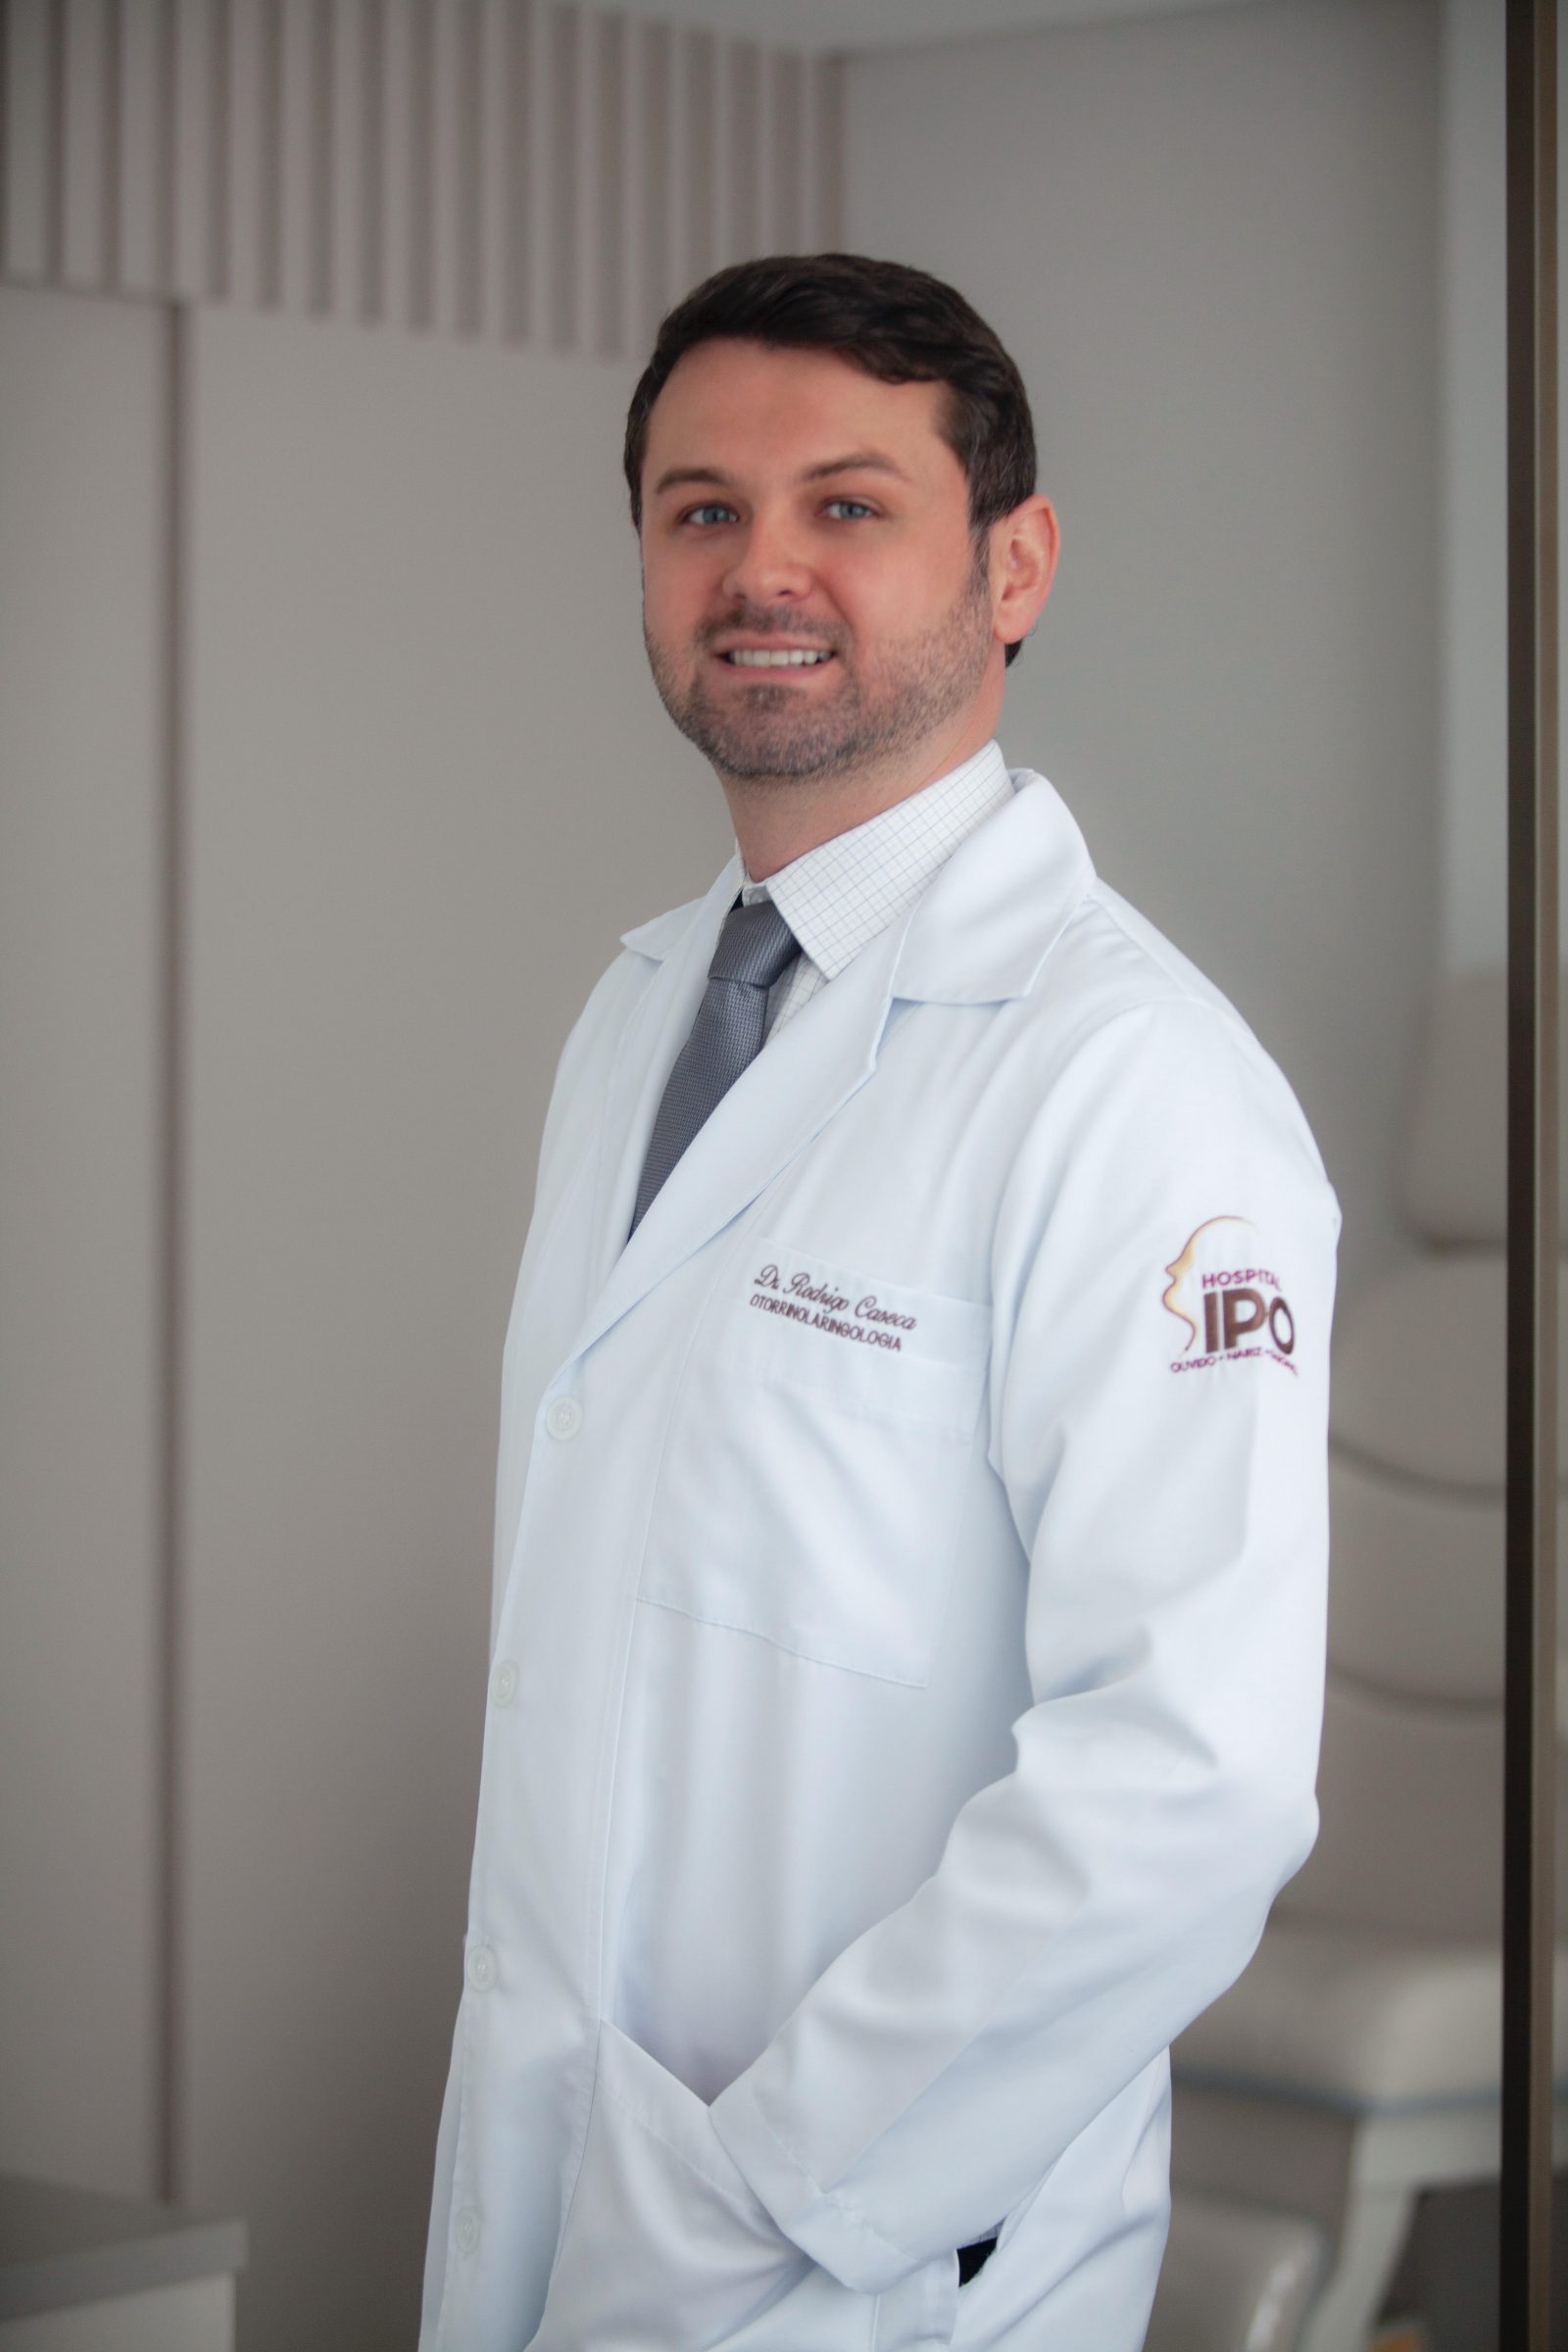 “Dicas de Saúde com Dr. Rodrigo Caseca”: O que é amigdalite?